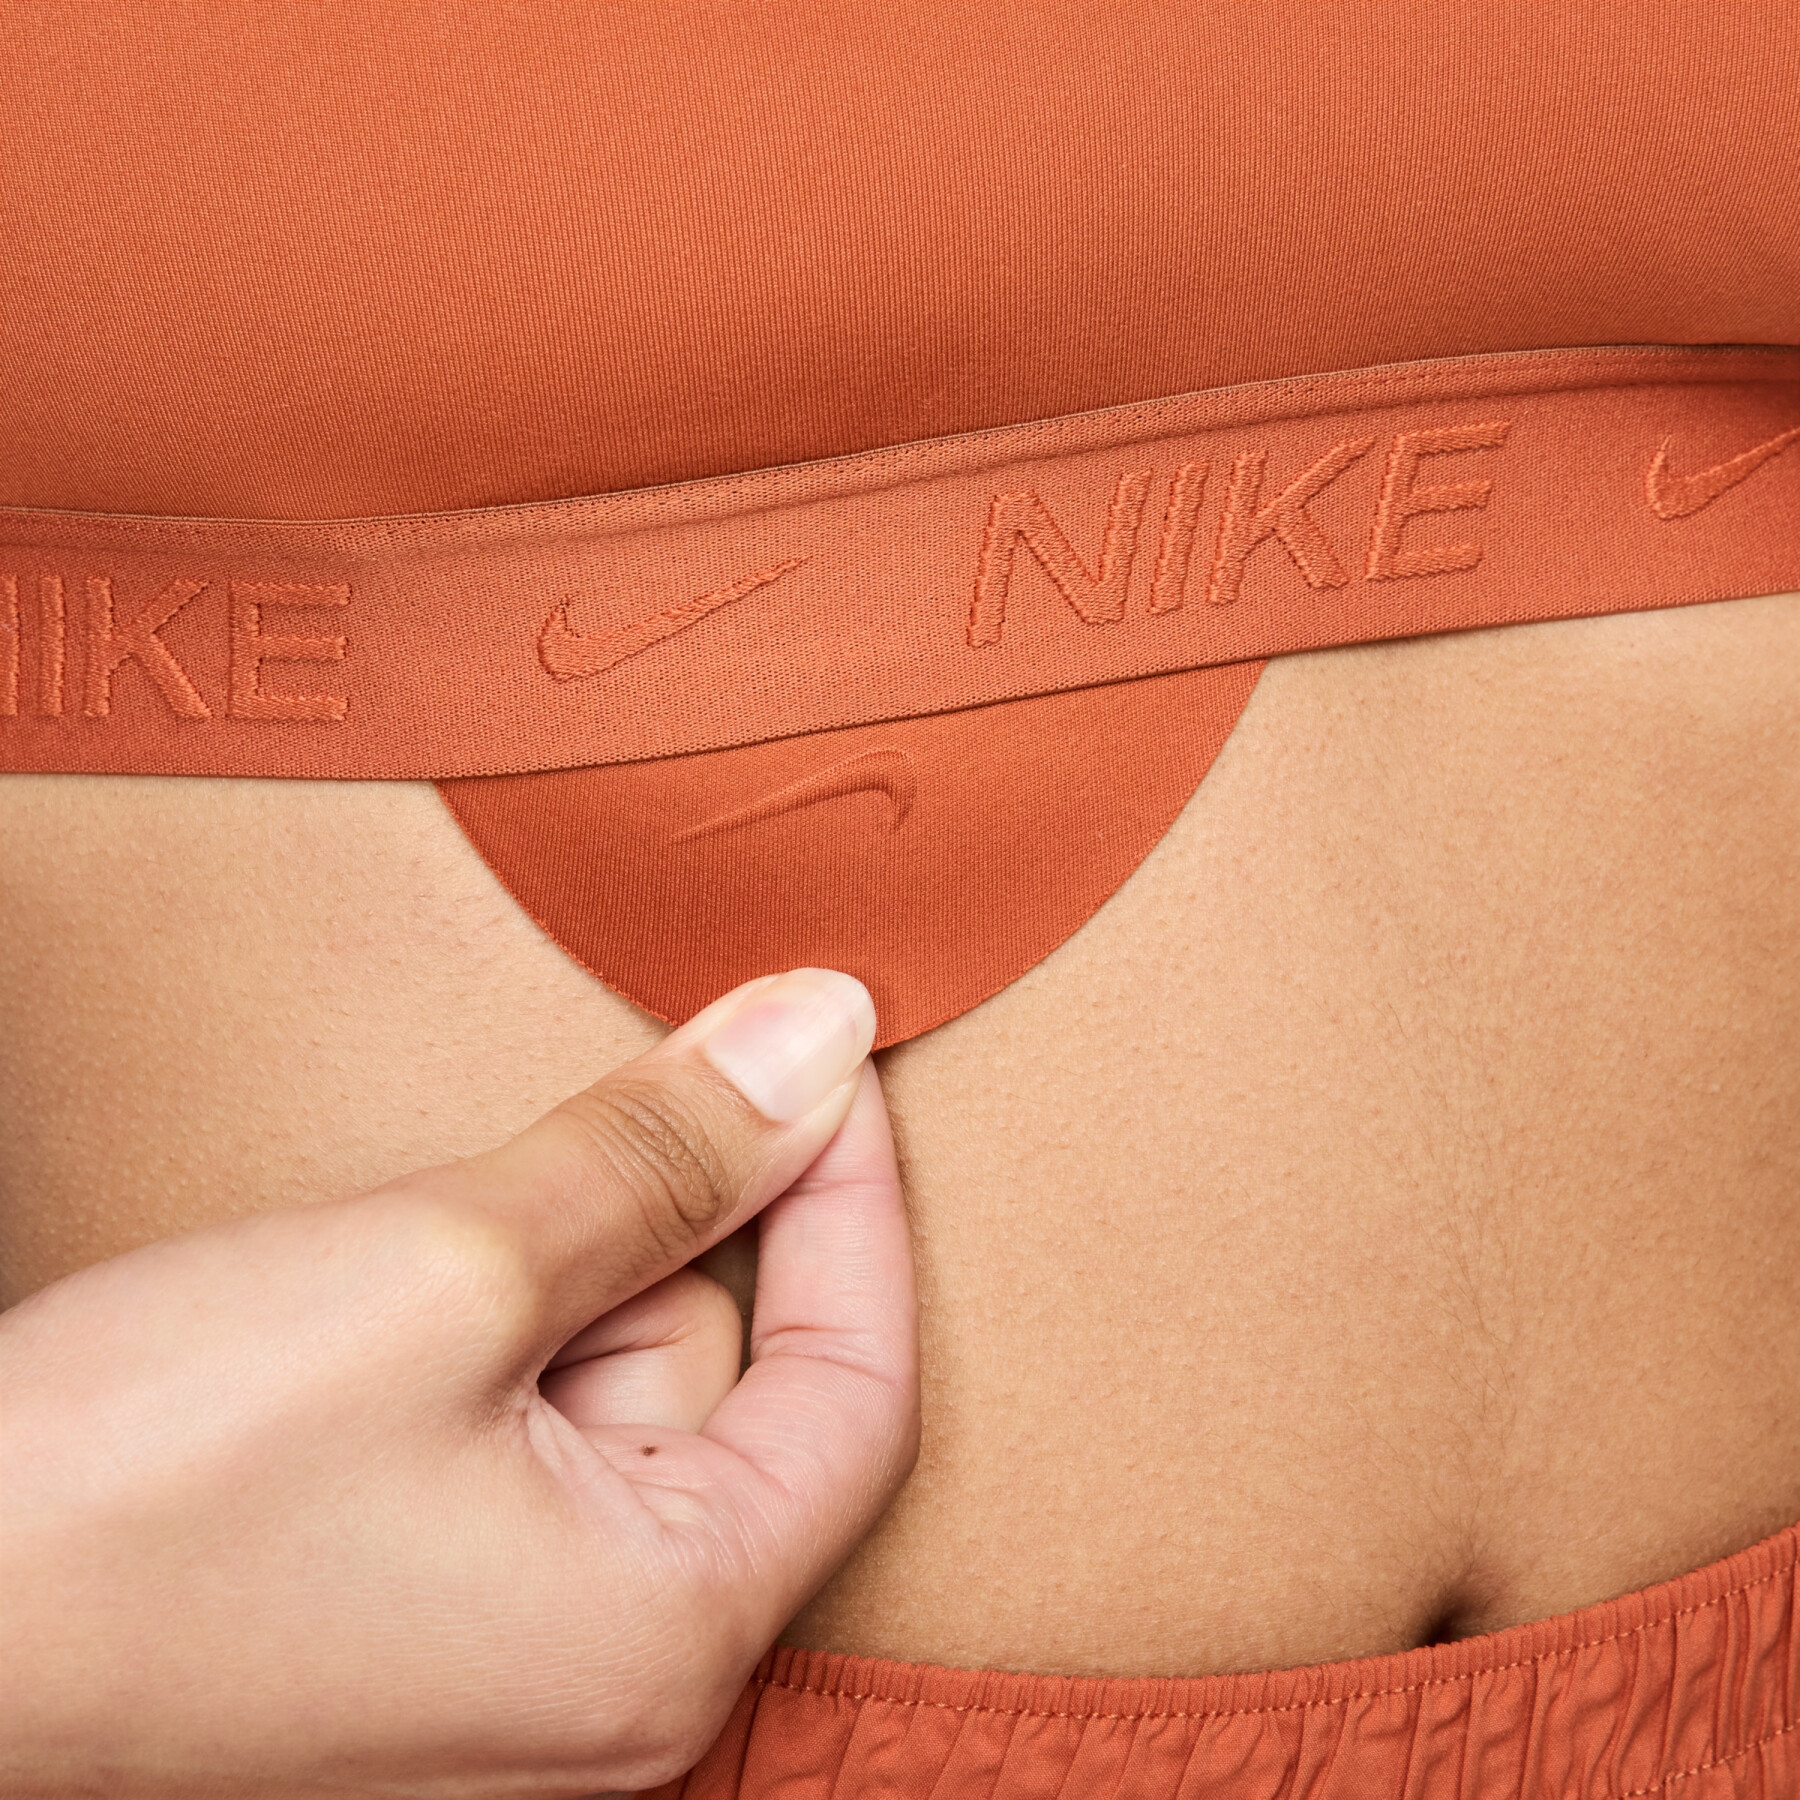 Reggiseno donna a sostegno normale Nike Indy